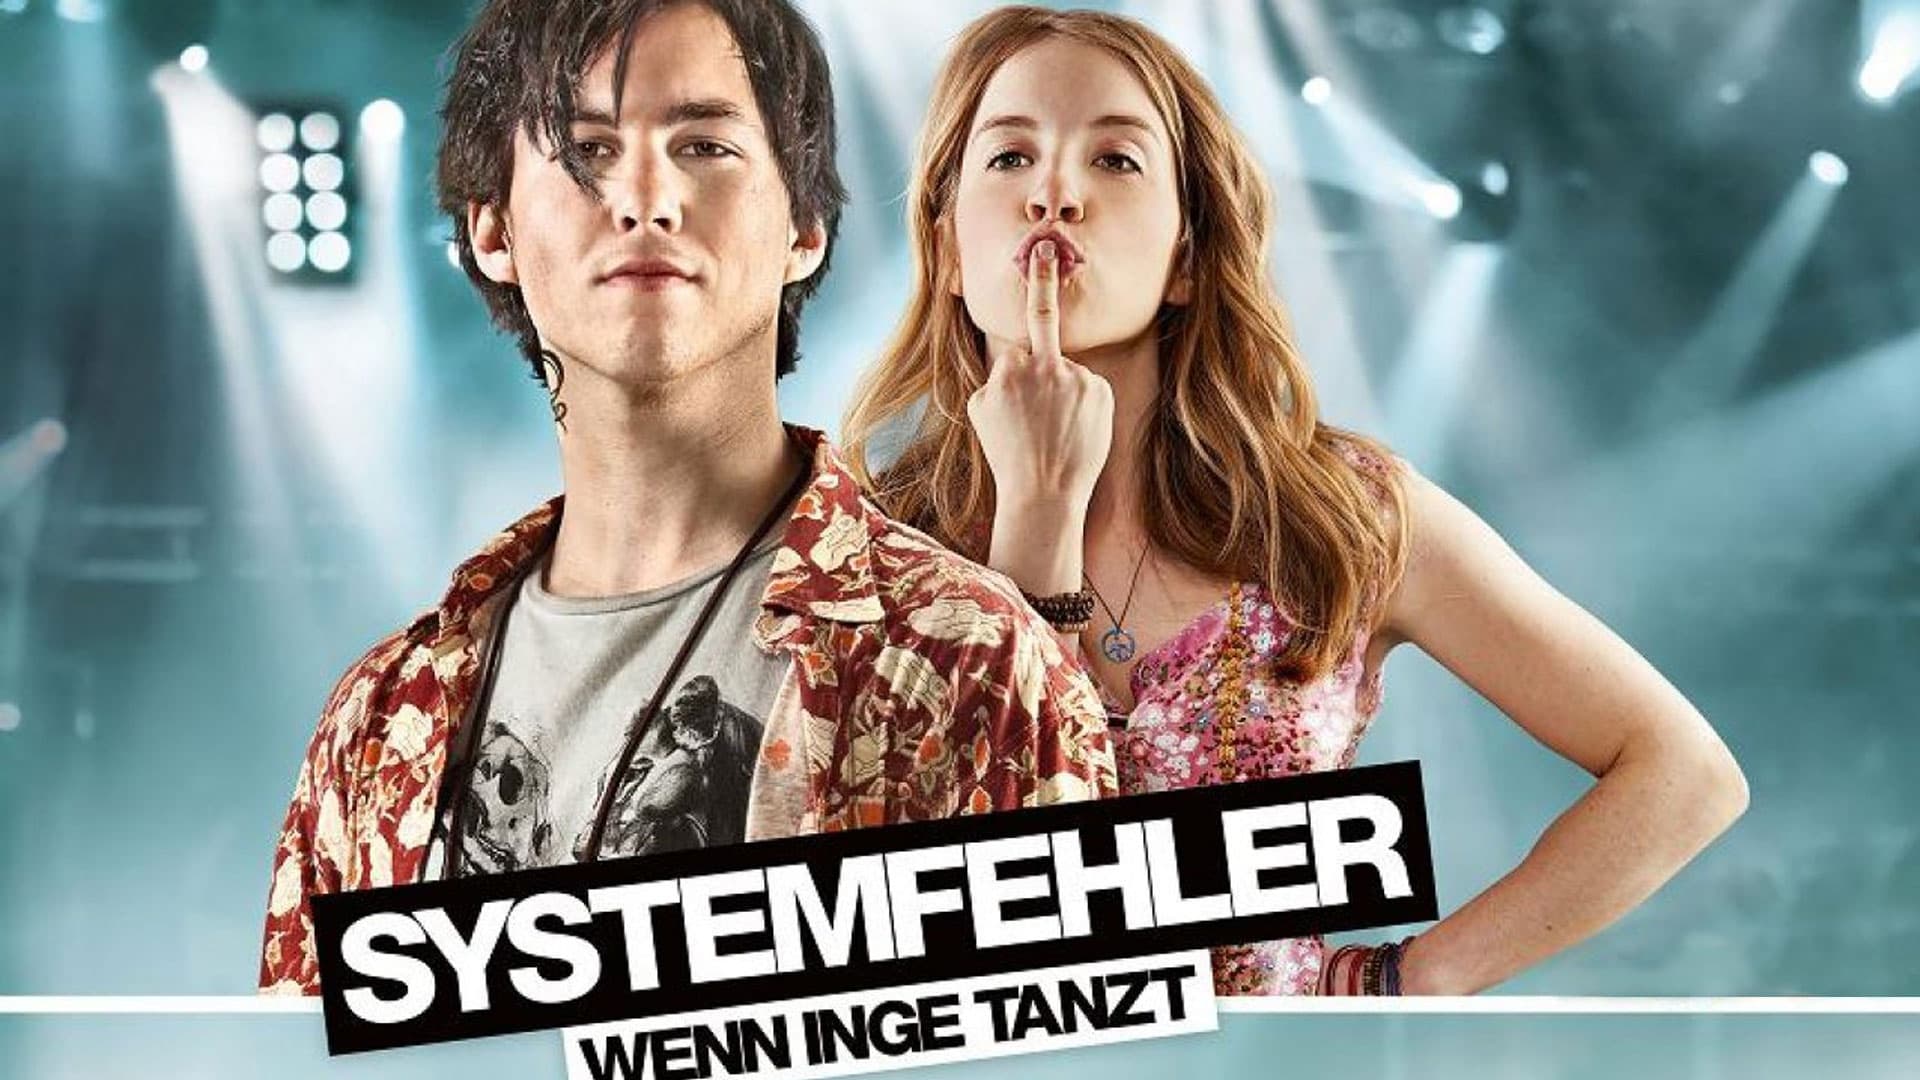 Systemfehler - Wenn Inge tanzt (2013)